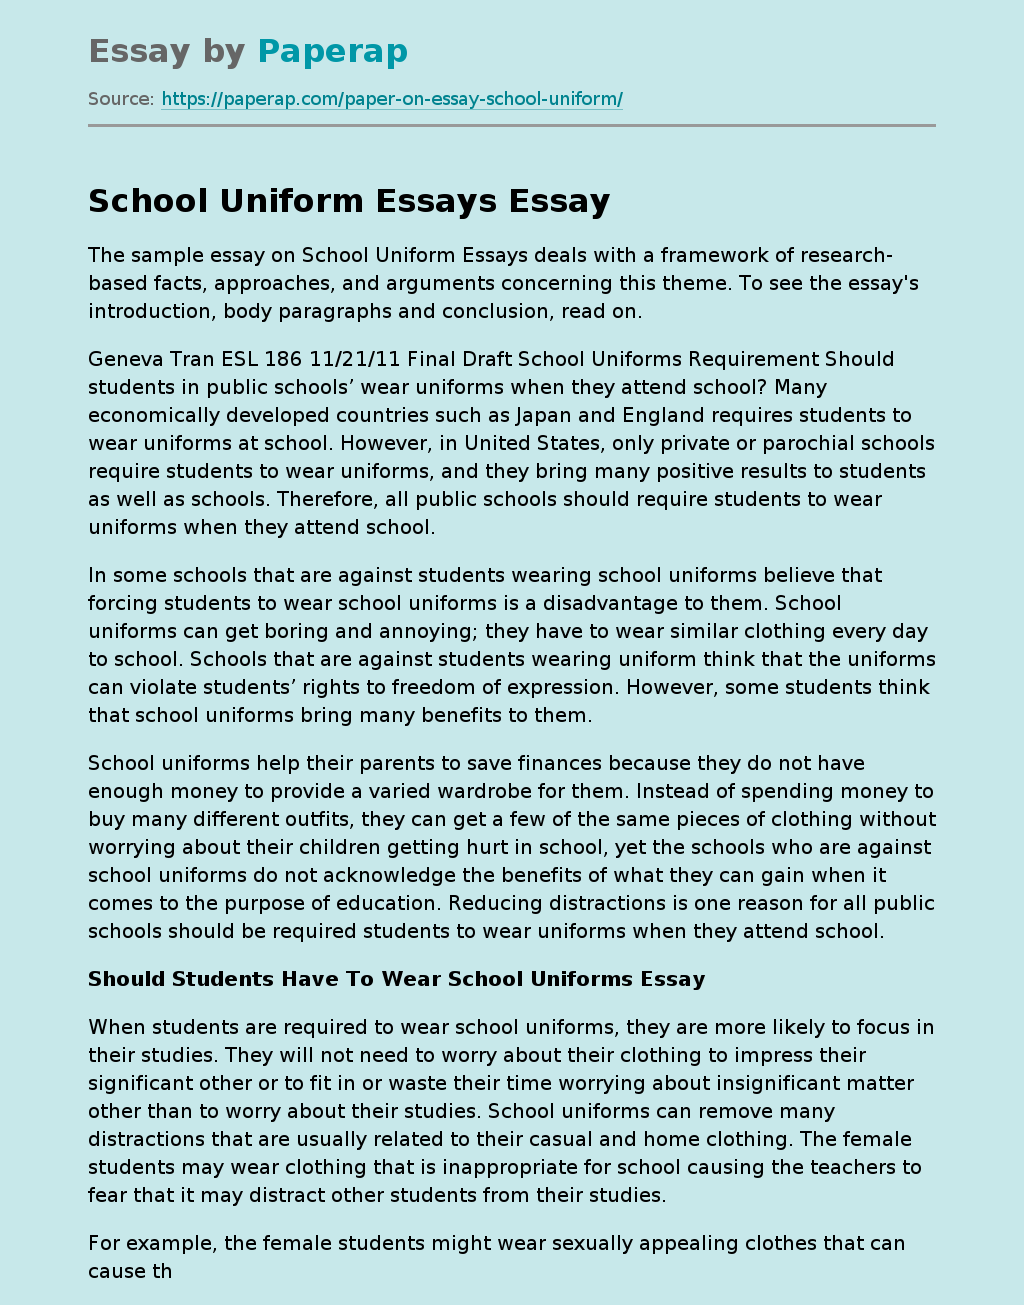 School Uniform Essays